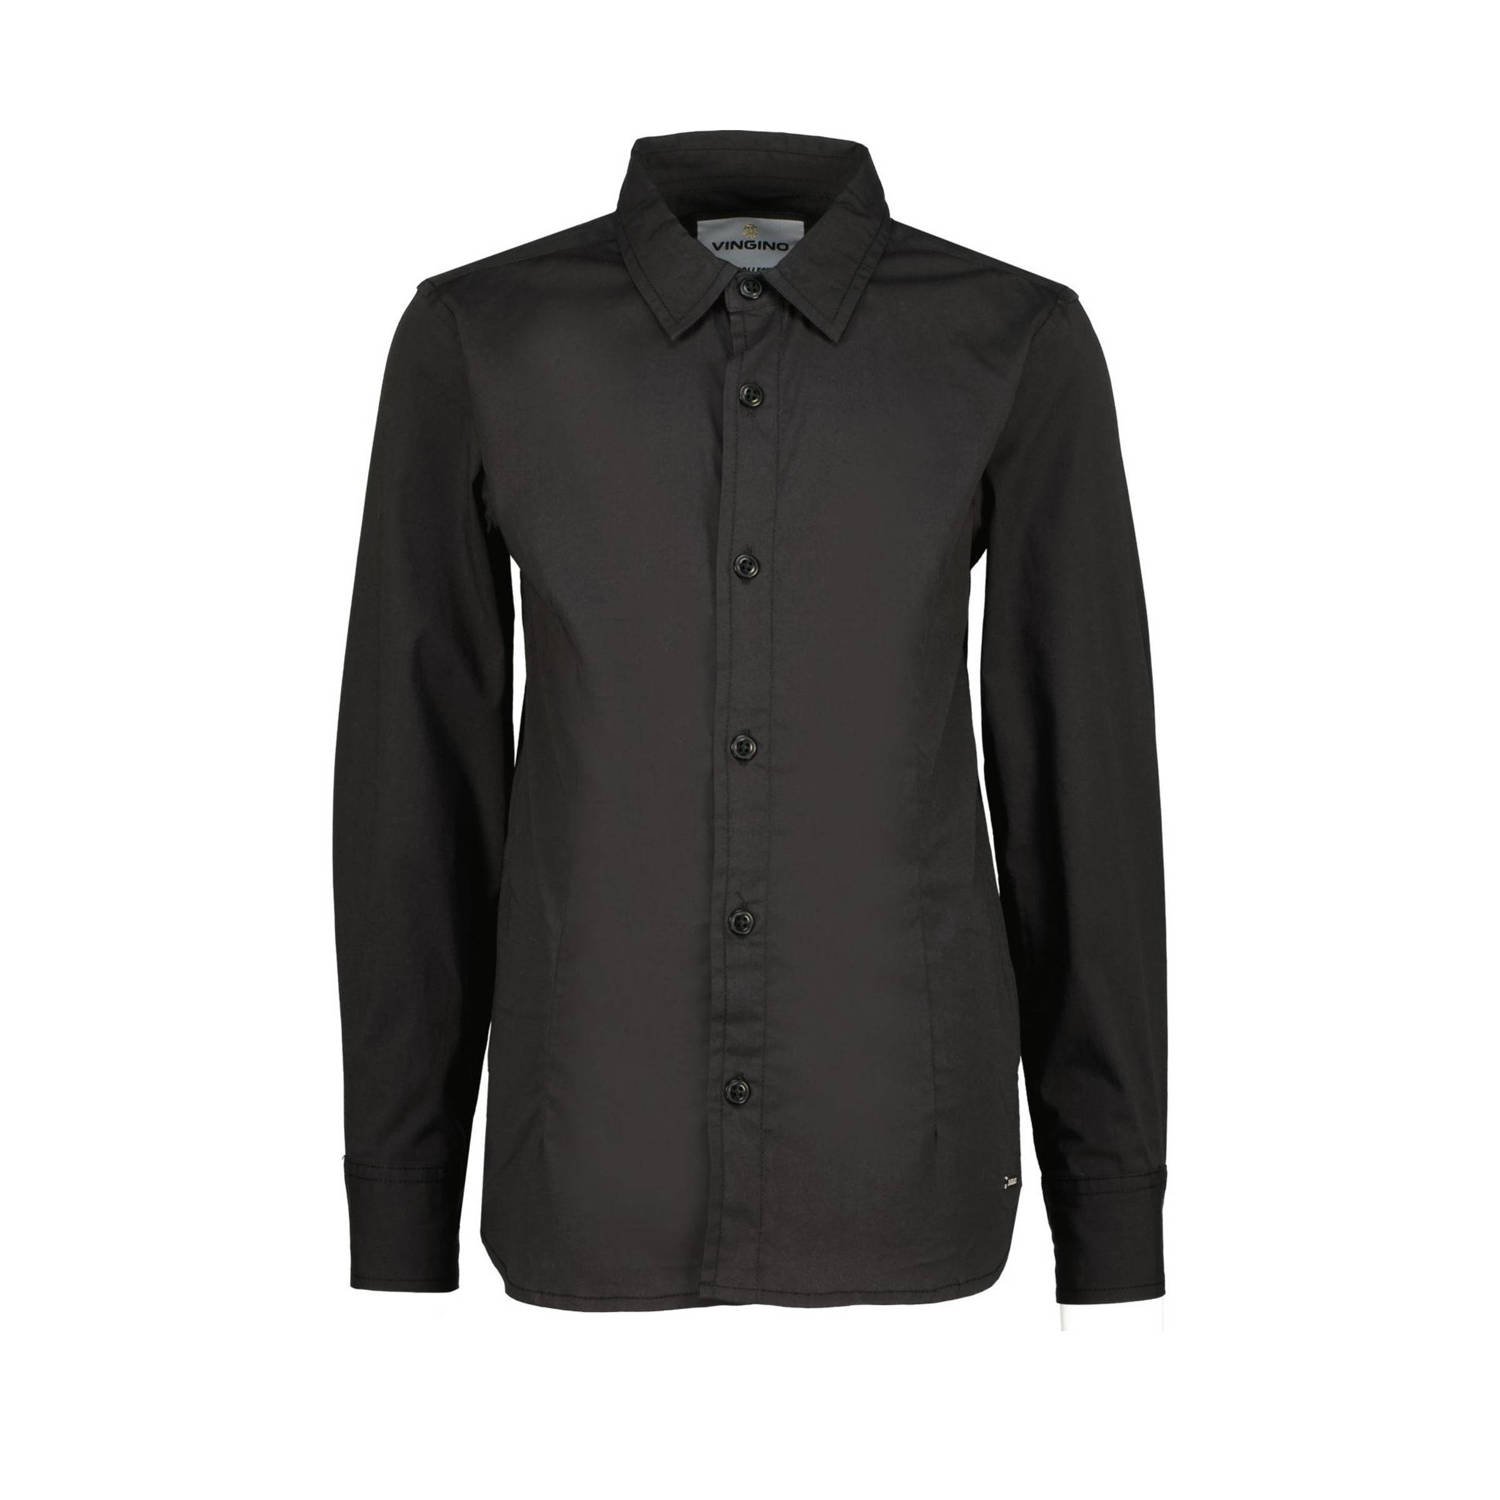 VINGINO overhemd Lasic zwart T-shirt Jongens Katoen Klassieke kraag Effen 116